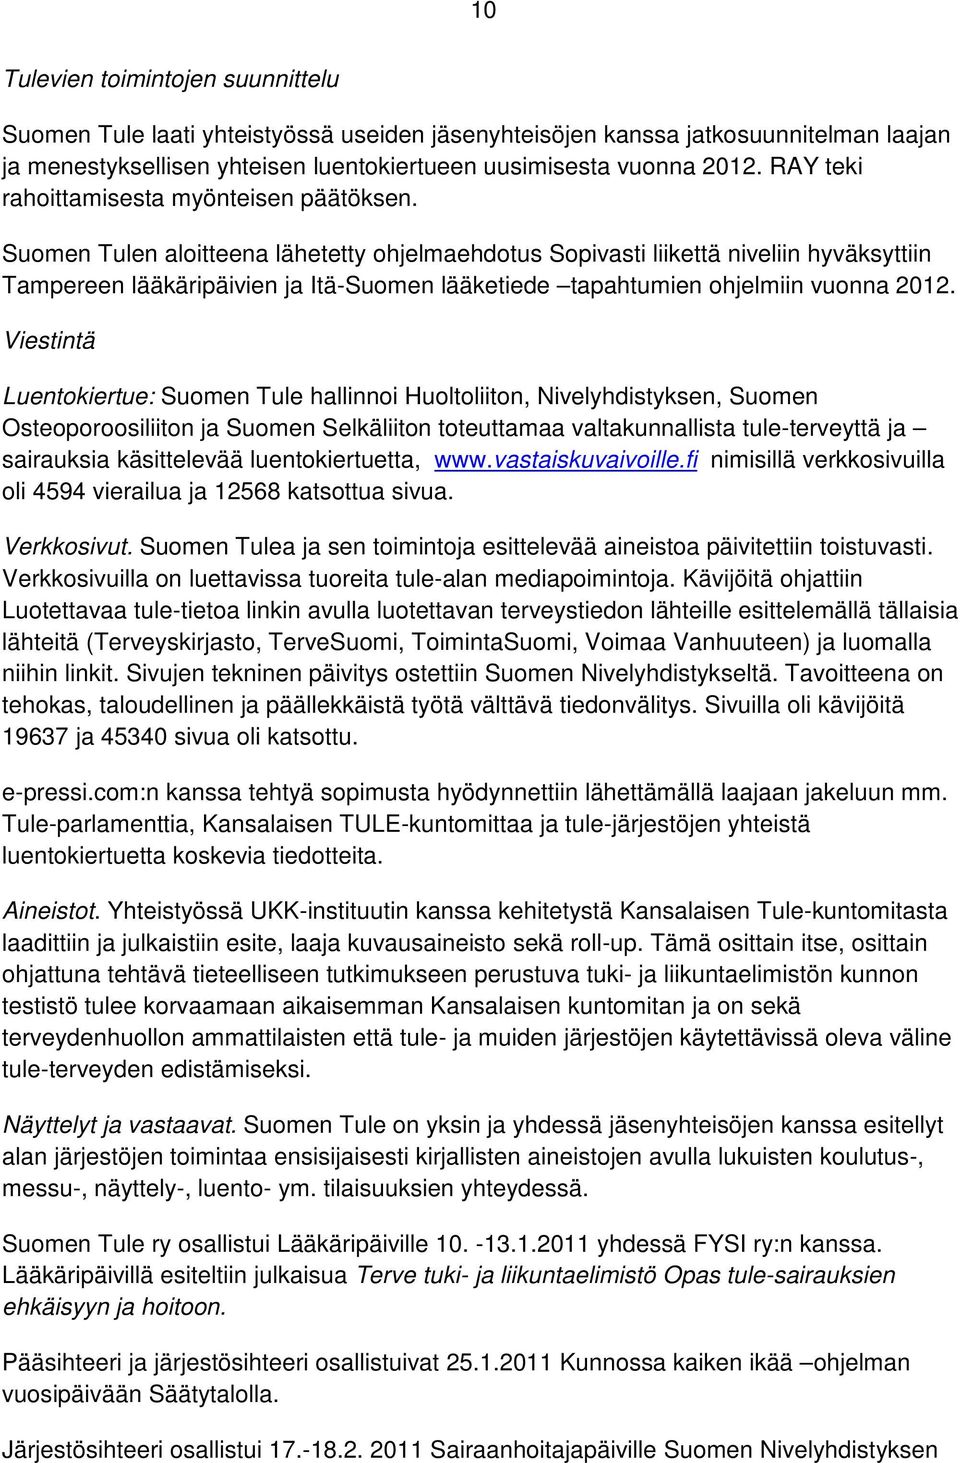 Suomen Tulen aloitteena lähetetty ohjelmaehdotus Sopivasti liikettä niveliin hyväksyttiin Tampereen lääkäripäivien ja Itä-Suomen lääketiede tapahtumien ohjelmiin vuonna 2012.